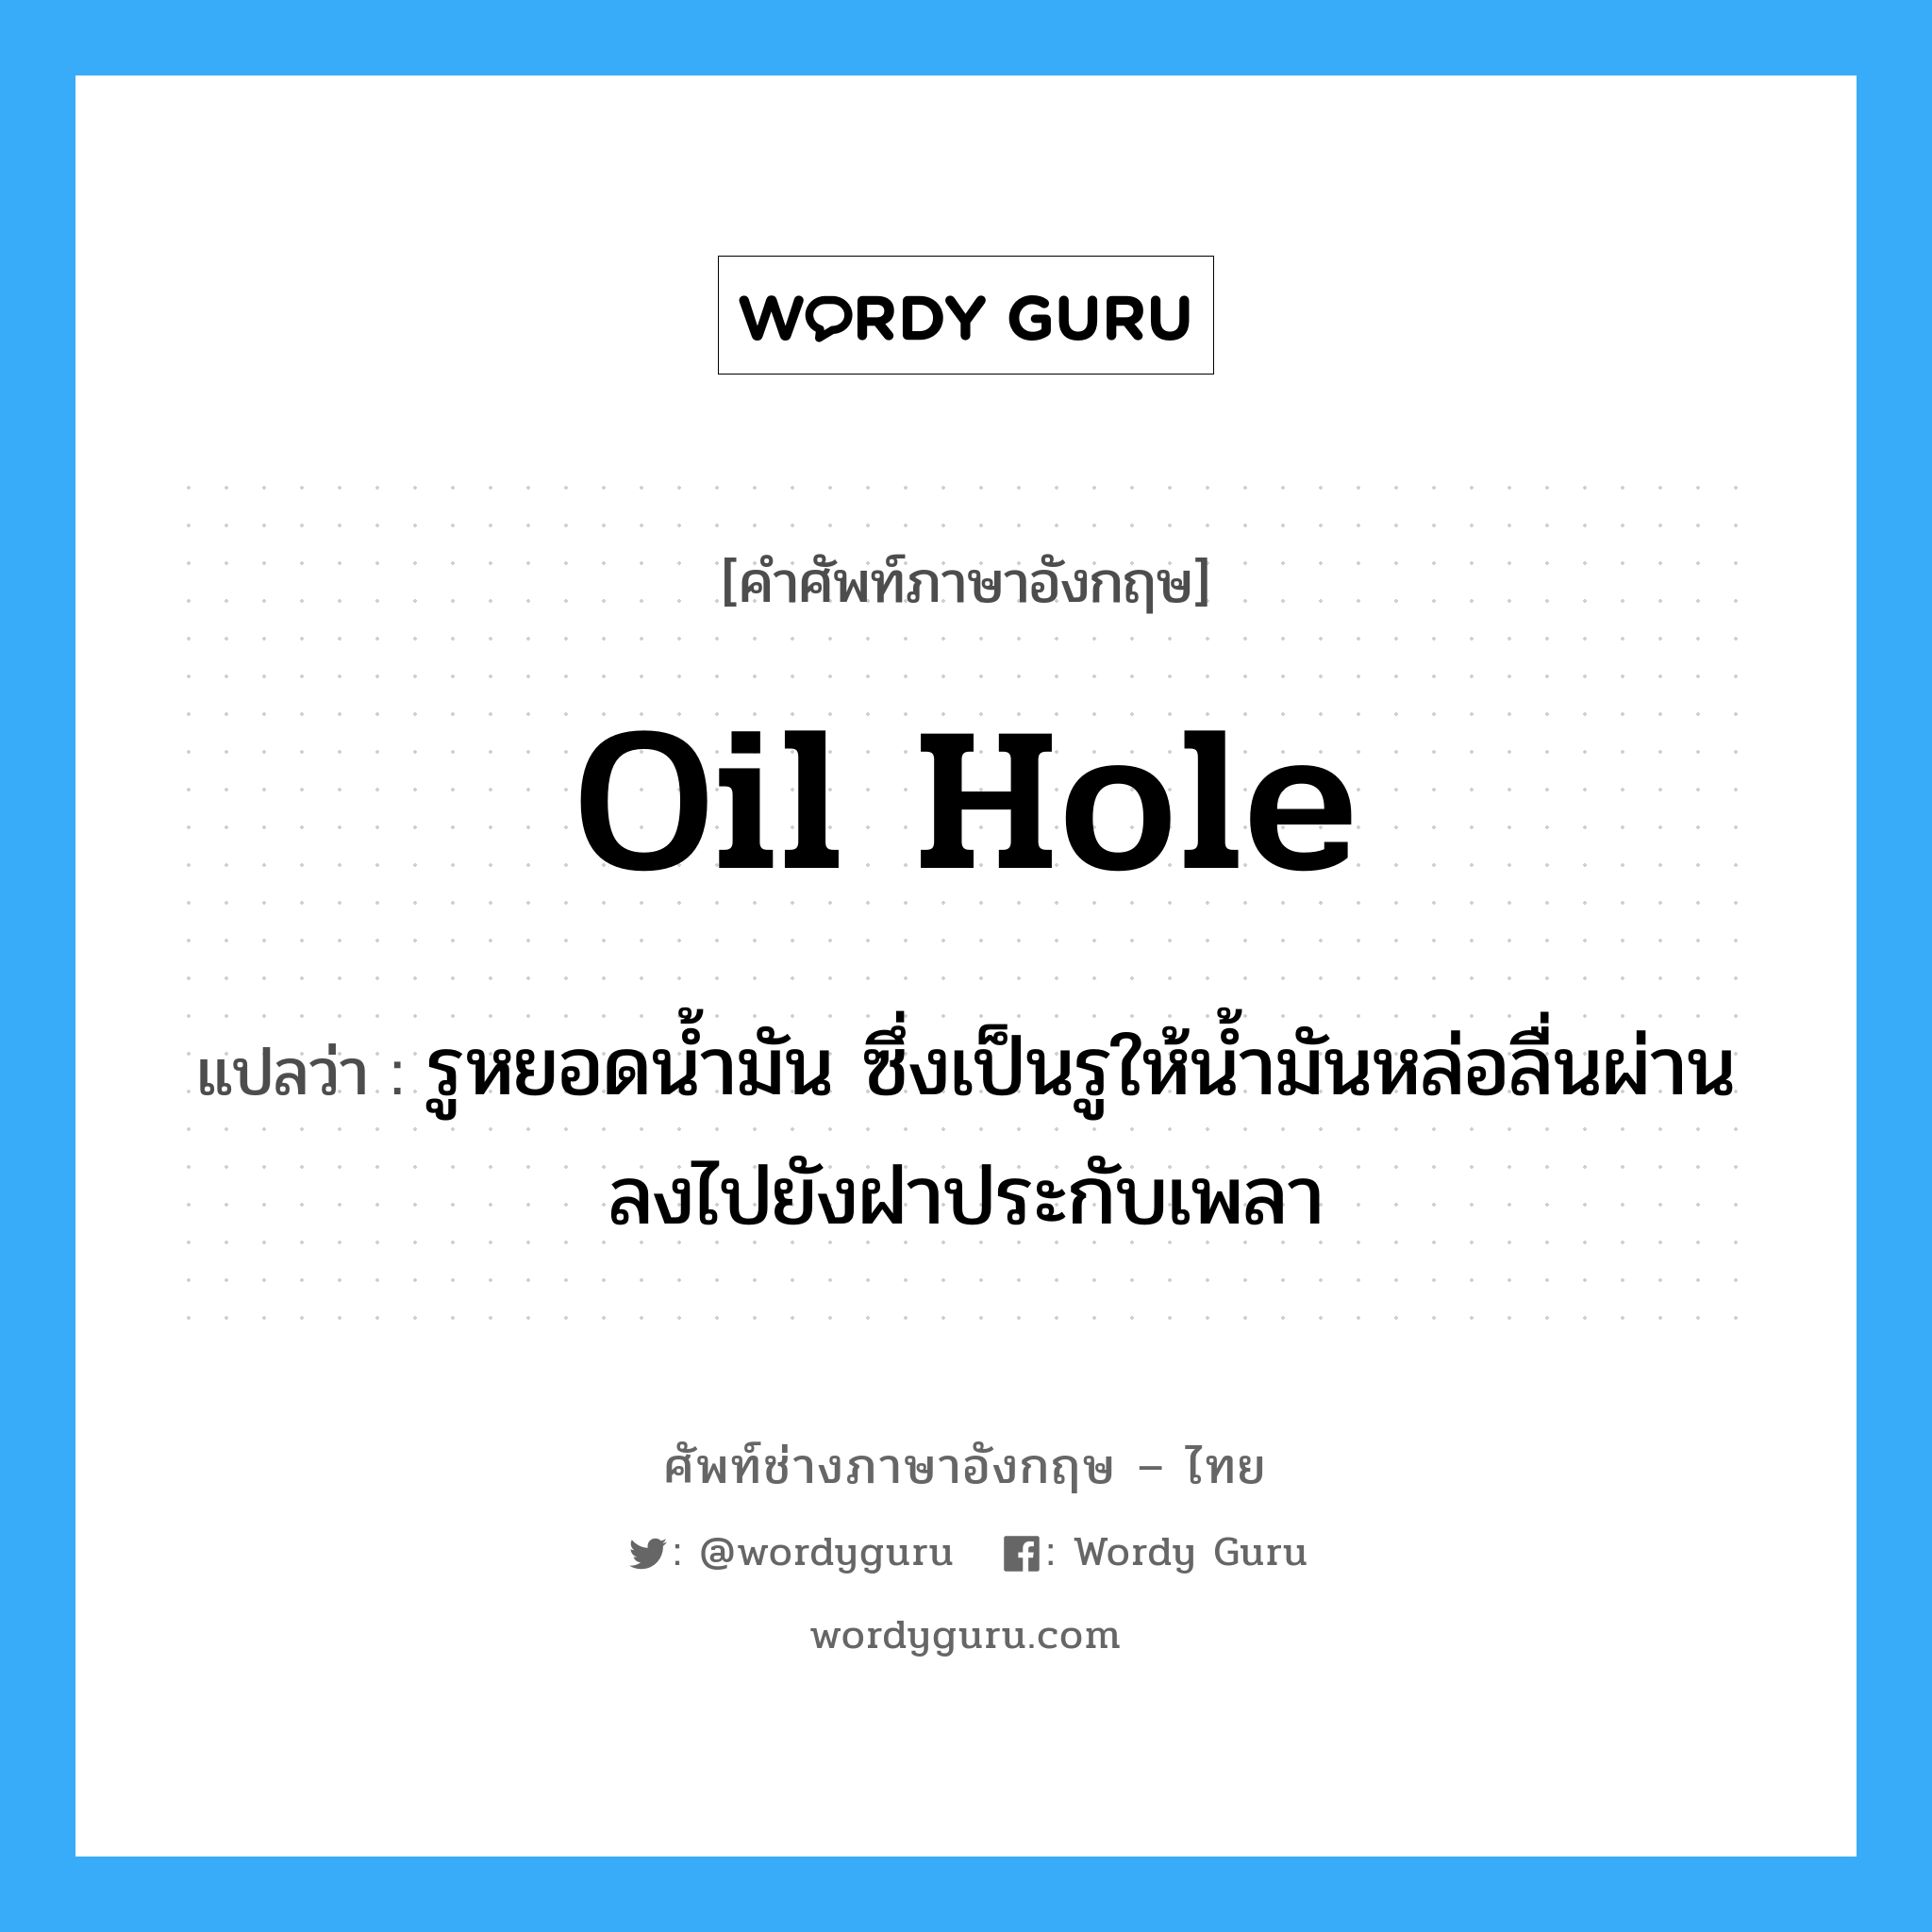 oil hole แปลว่า?, คำศัพท์ช่างภาษาอังกฤษ - ไทย oil hole คำศัพท์ภาษาอังกฤษ oil hole แปลว่า รูหยอดน้ำมัน ซึ่งเป็นรูให้น้ำมันหล่อลื่นผ่านลงไปยังฝาประกับเพลา